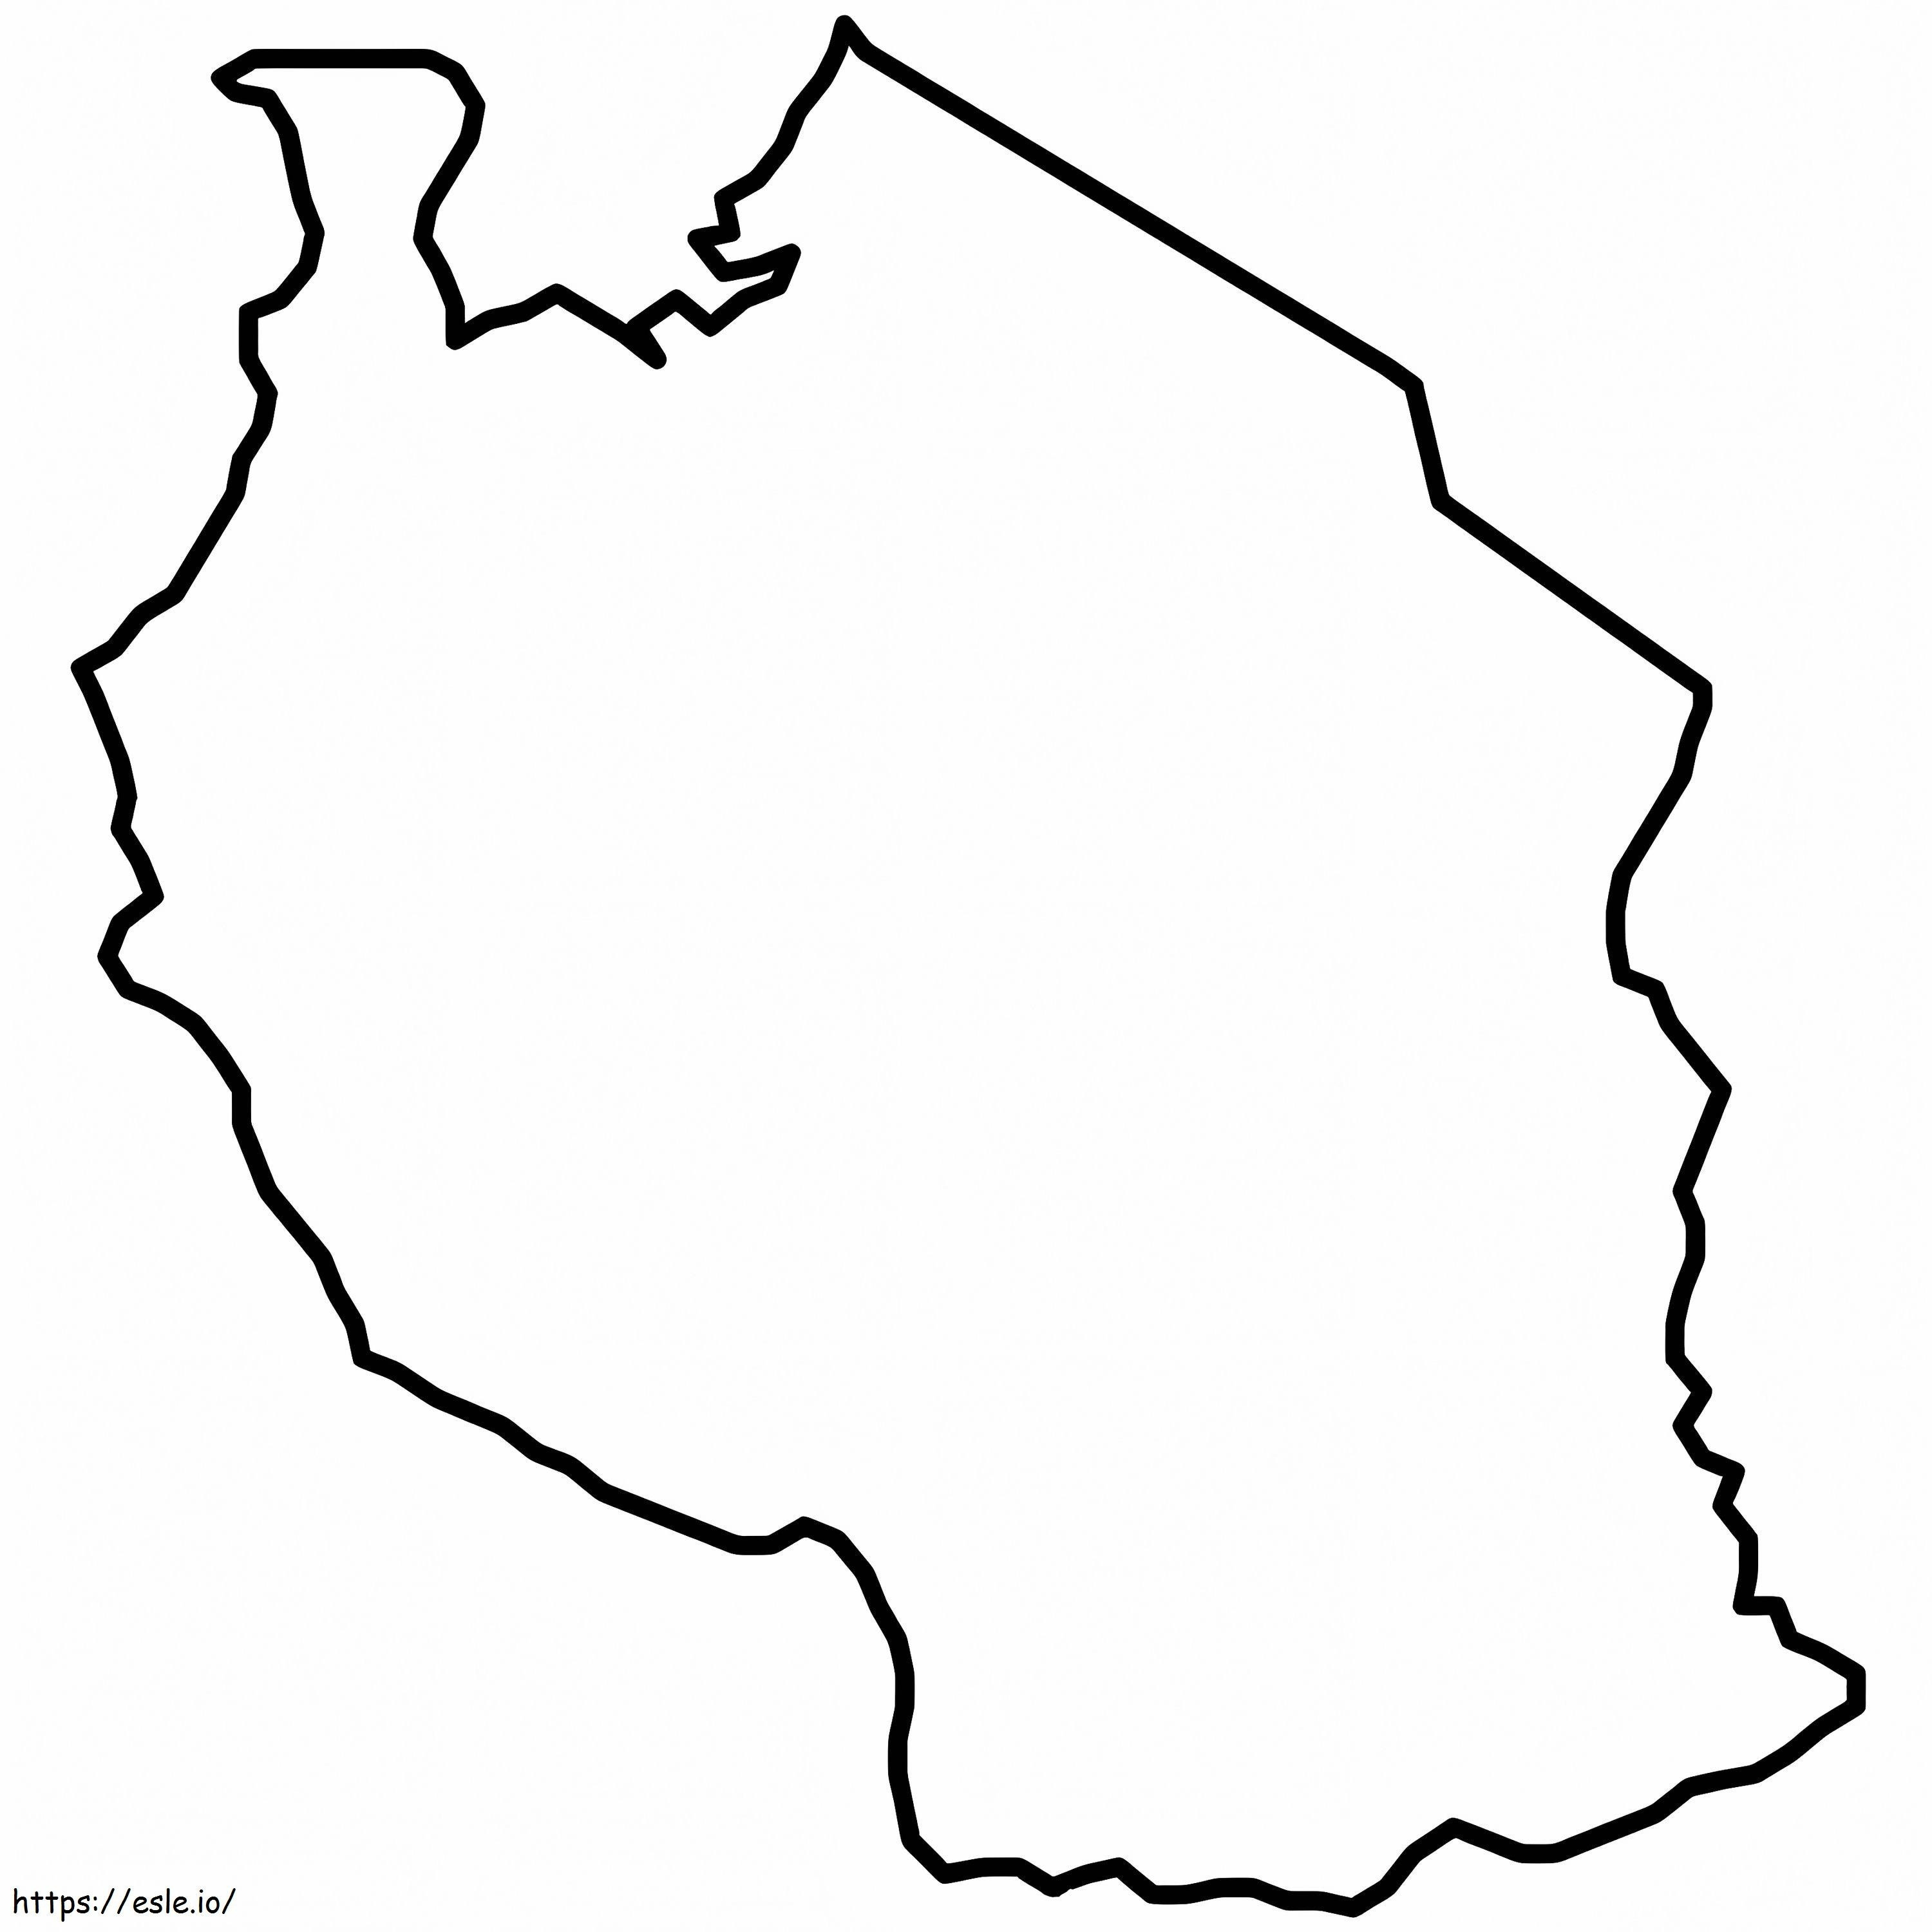 Profilo della mappa della Tanzania da colorare